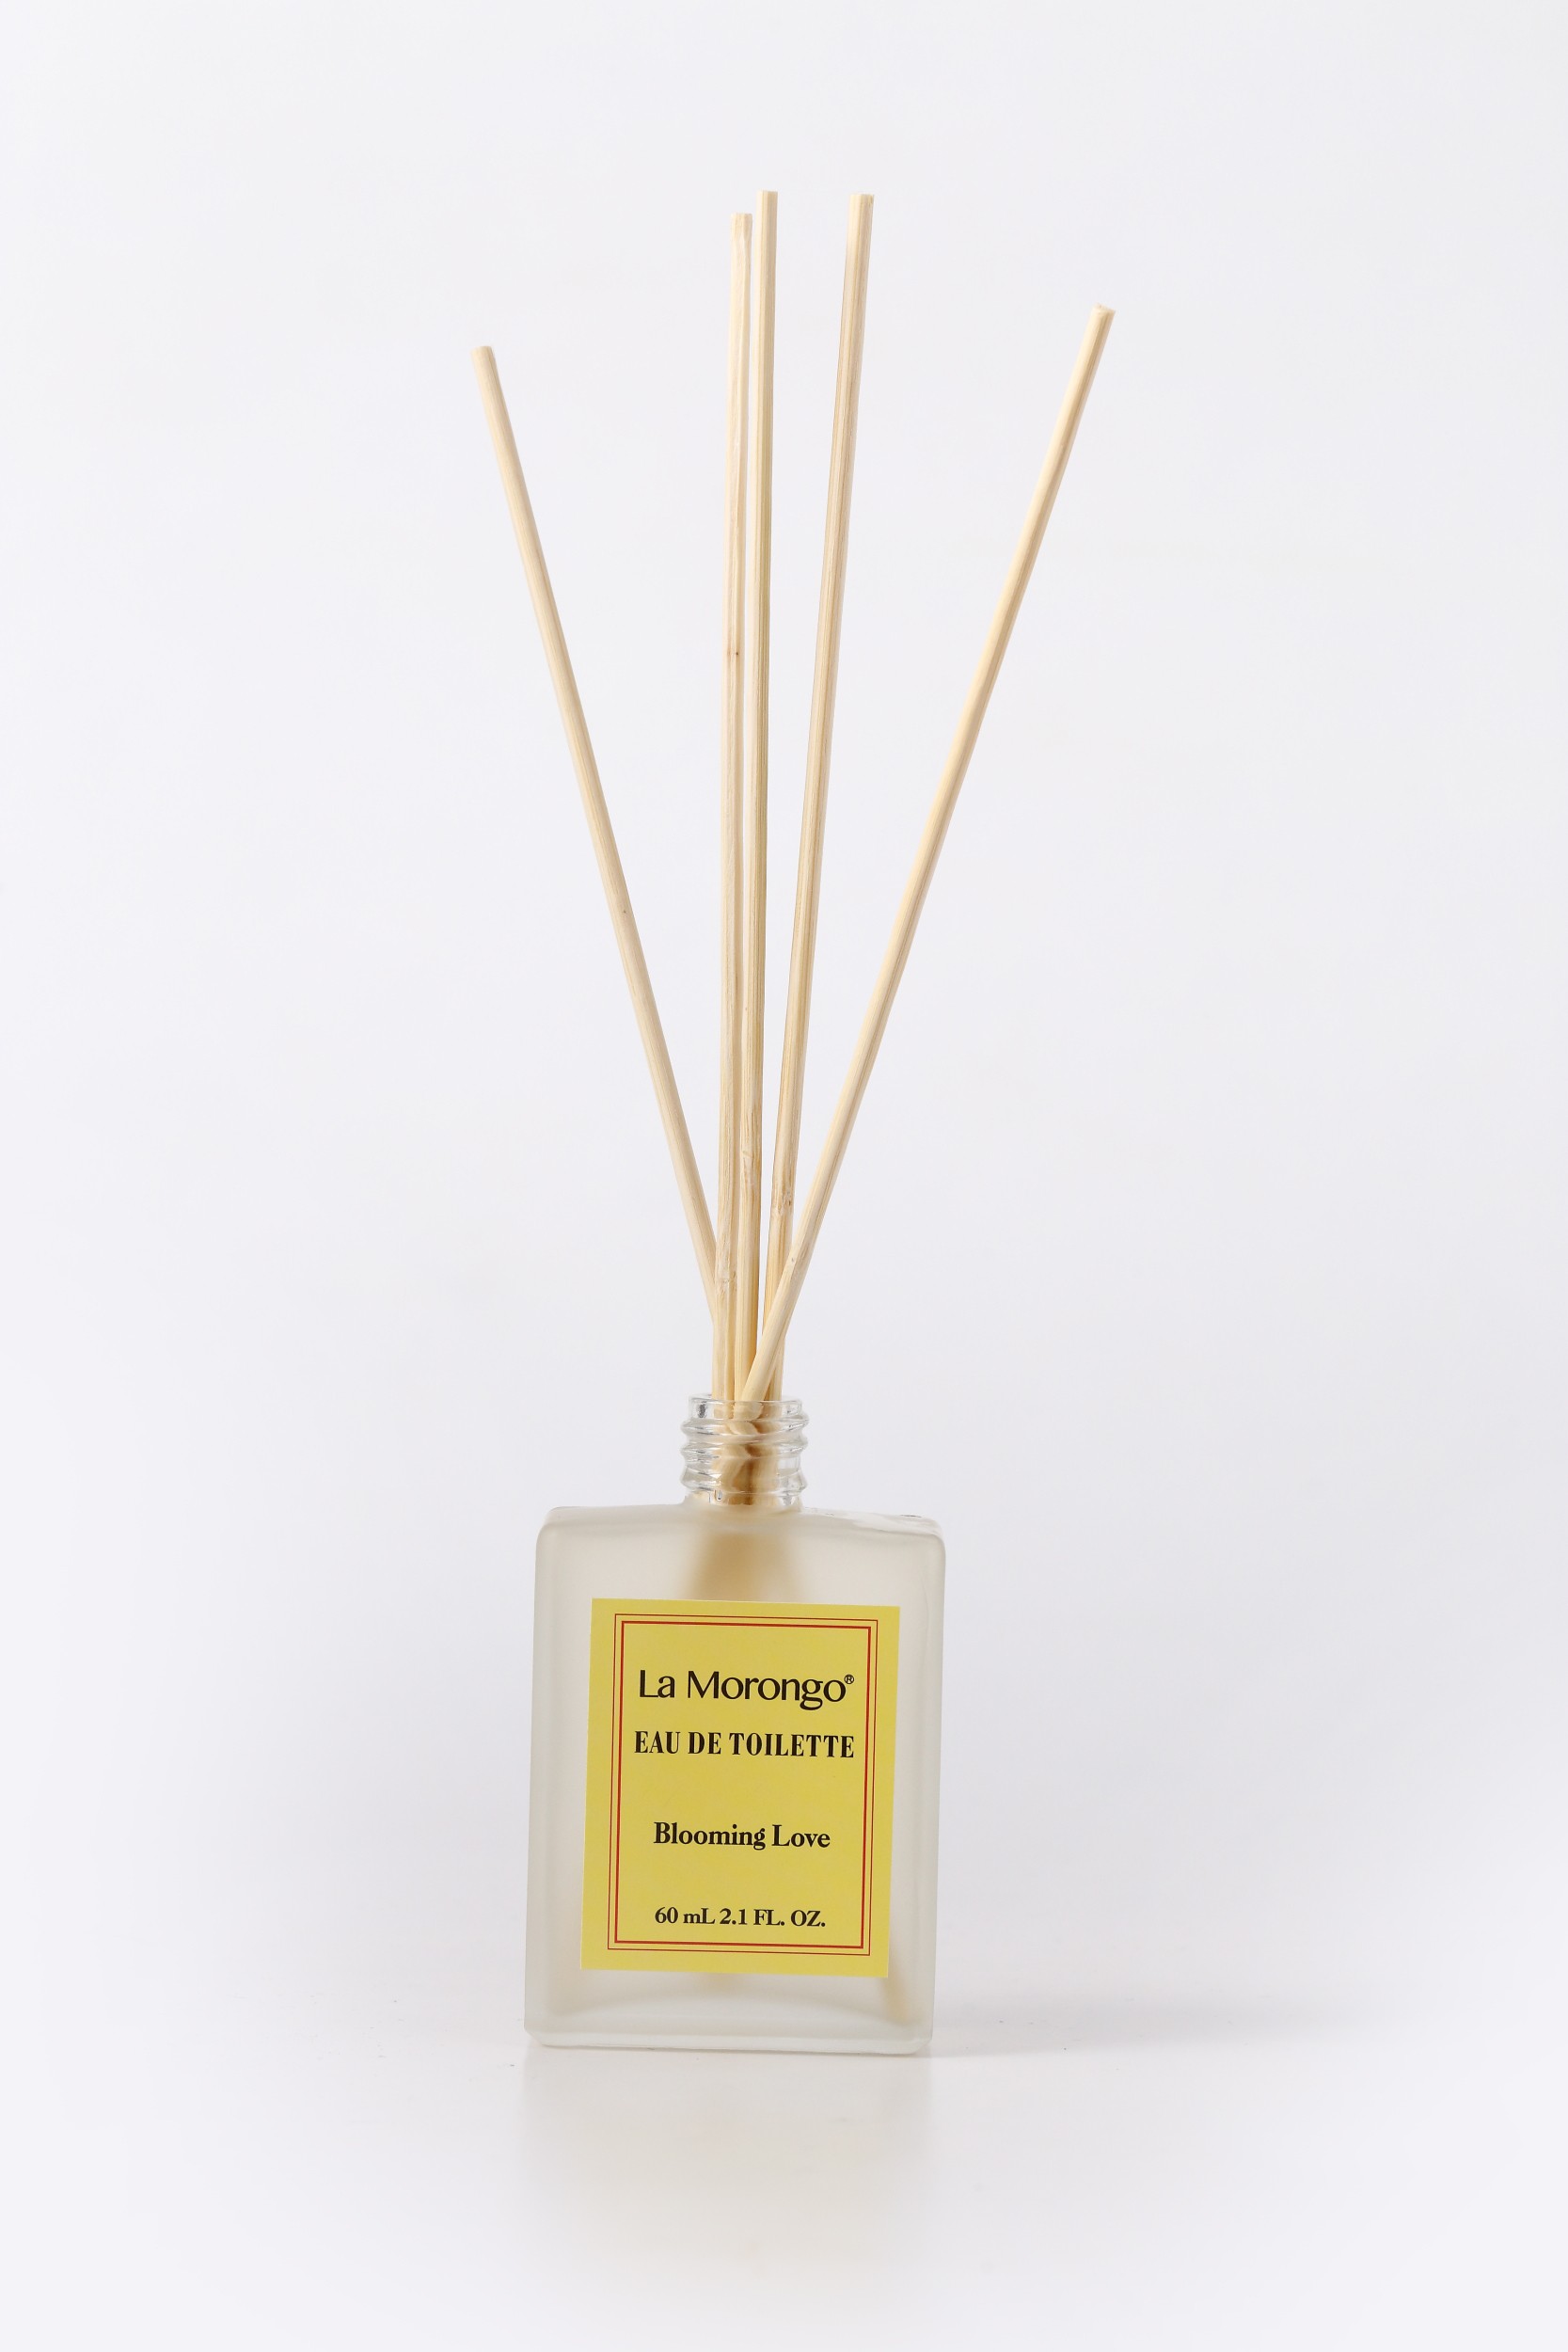 (法國樂木美品) 十瓶Blooming Love bamboo reed diffuser 黃標寵愛花香調蜂蜜桂花精油香氛噴霧擴香竹 60mL X10瓶Honey&Flowers Fragrance Spray,Gentle Scent,Nature,Relax